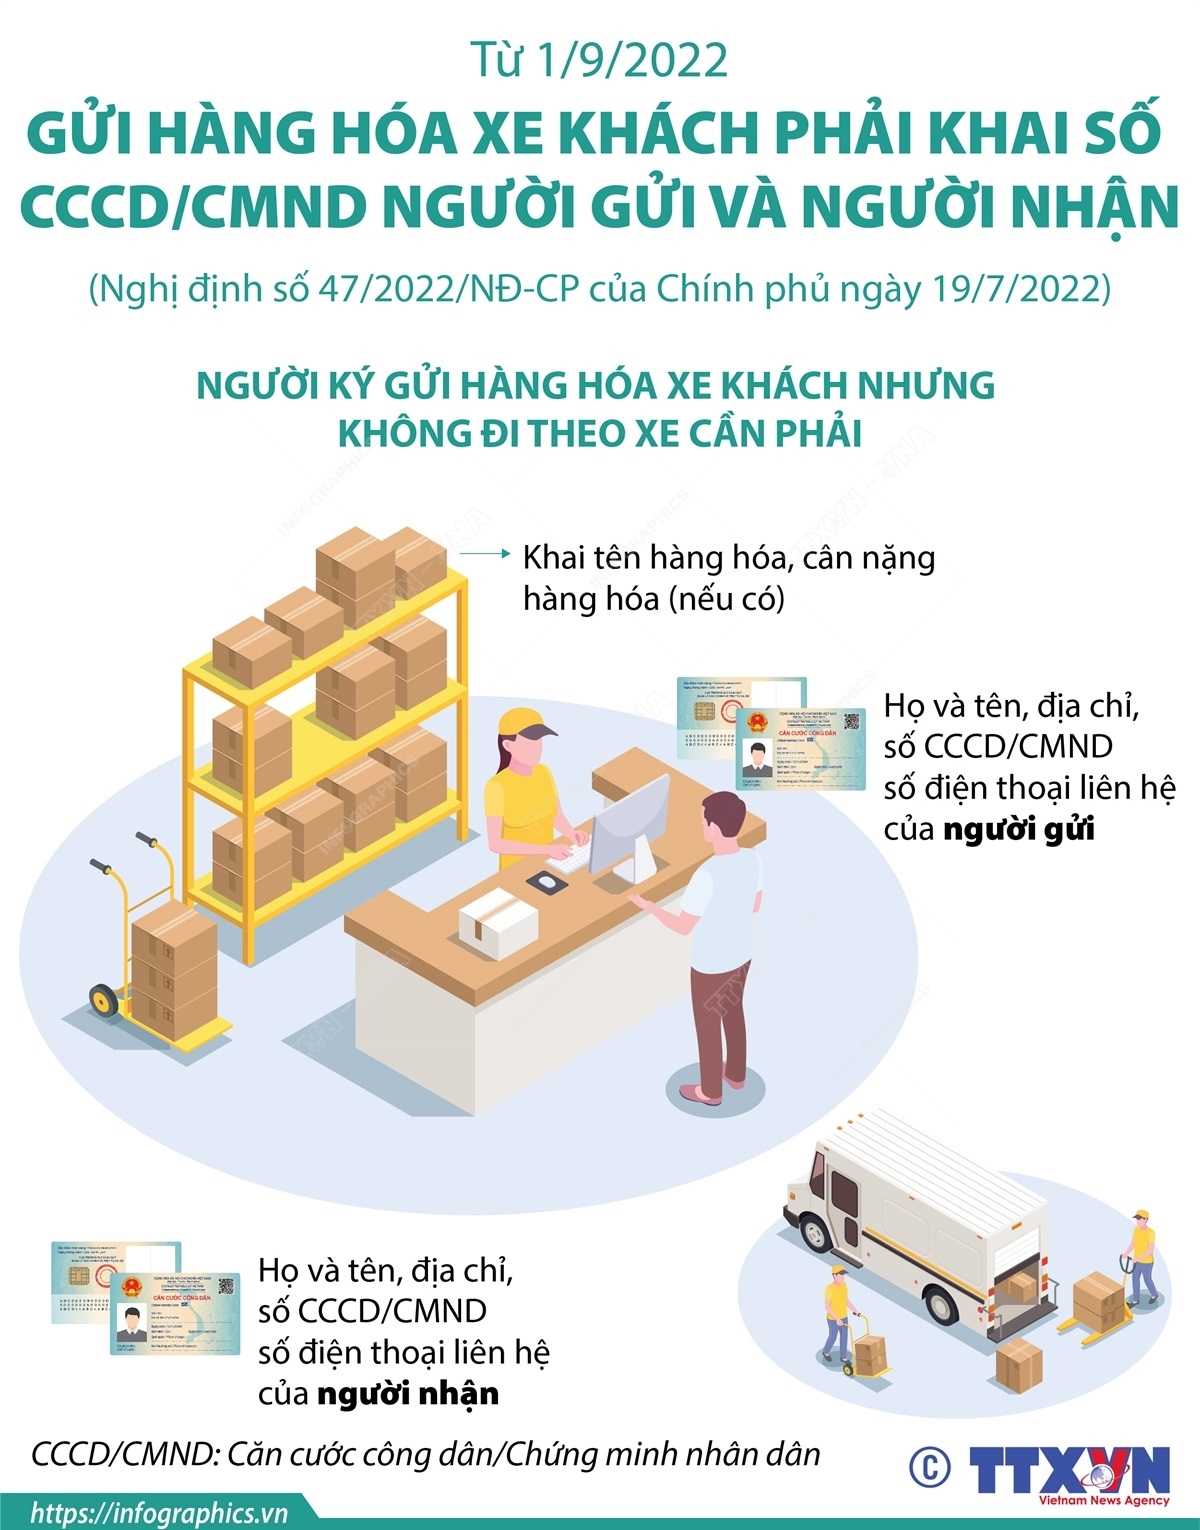 Từ 1/9, gửi hàng hóa xe khách phải khai số CCCD/CMND người gửi và người nhận